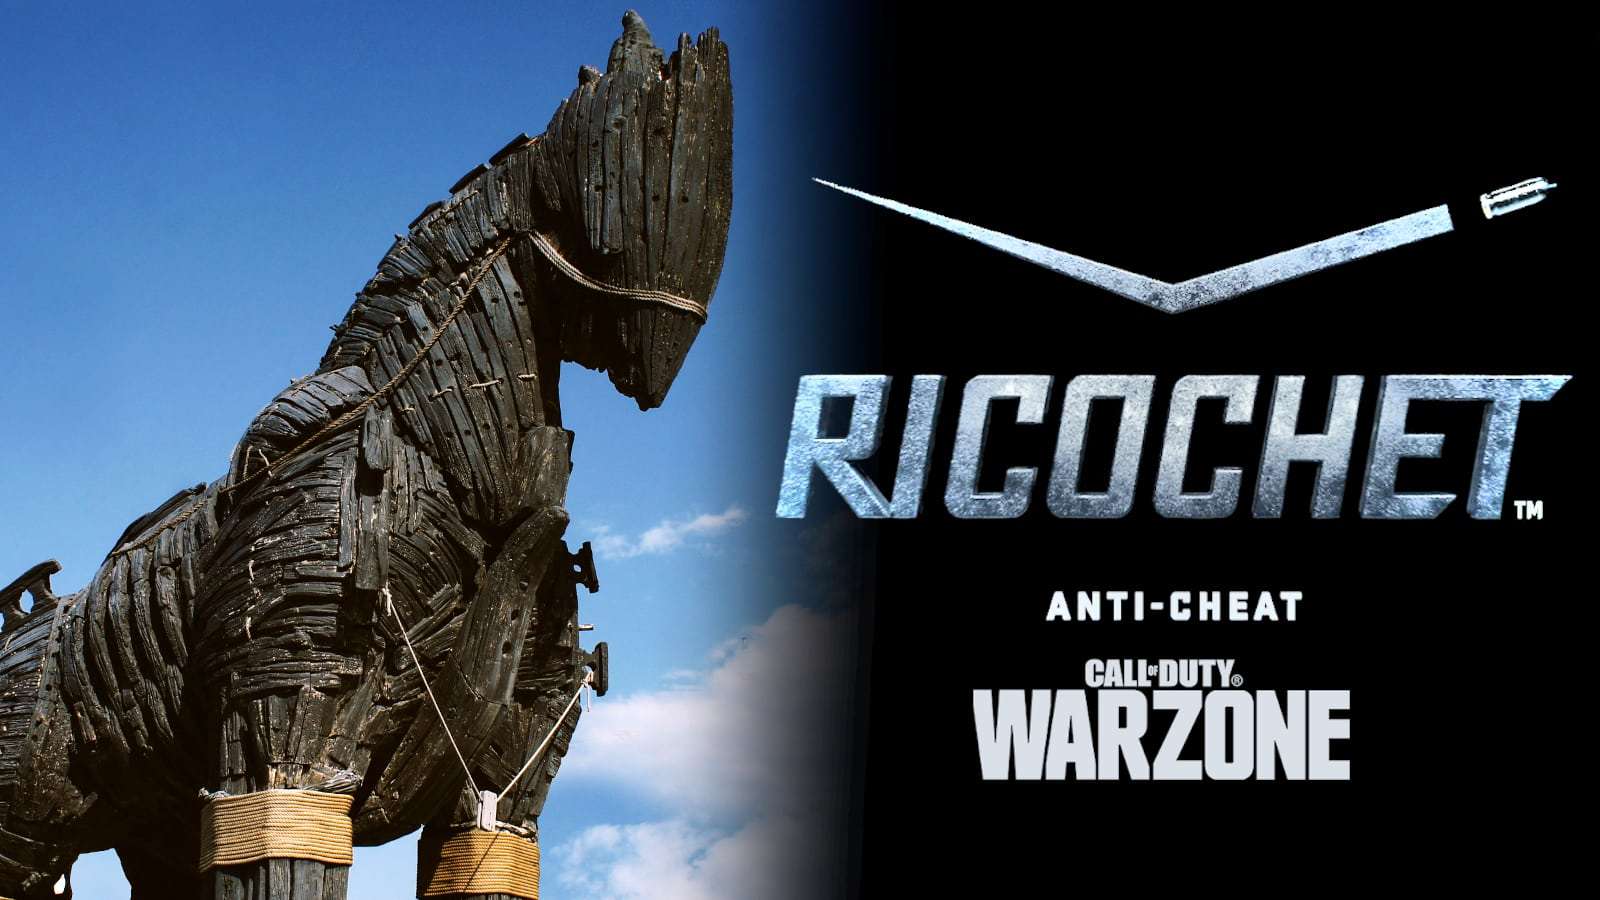 call of duty warzone anti cheat ricochet trojan horse